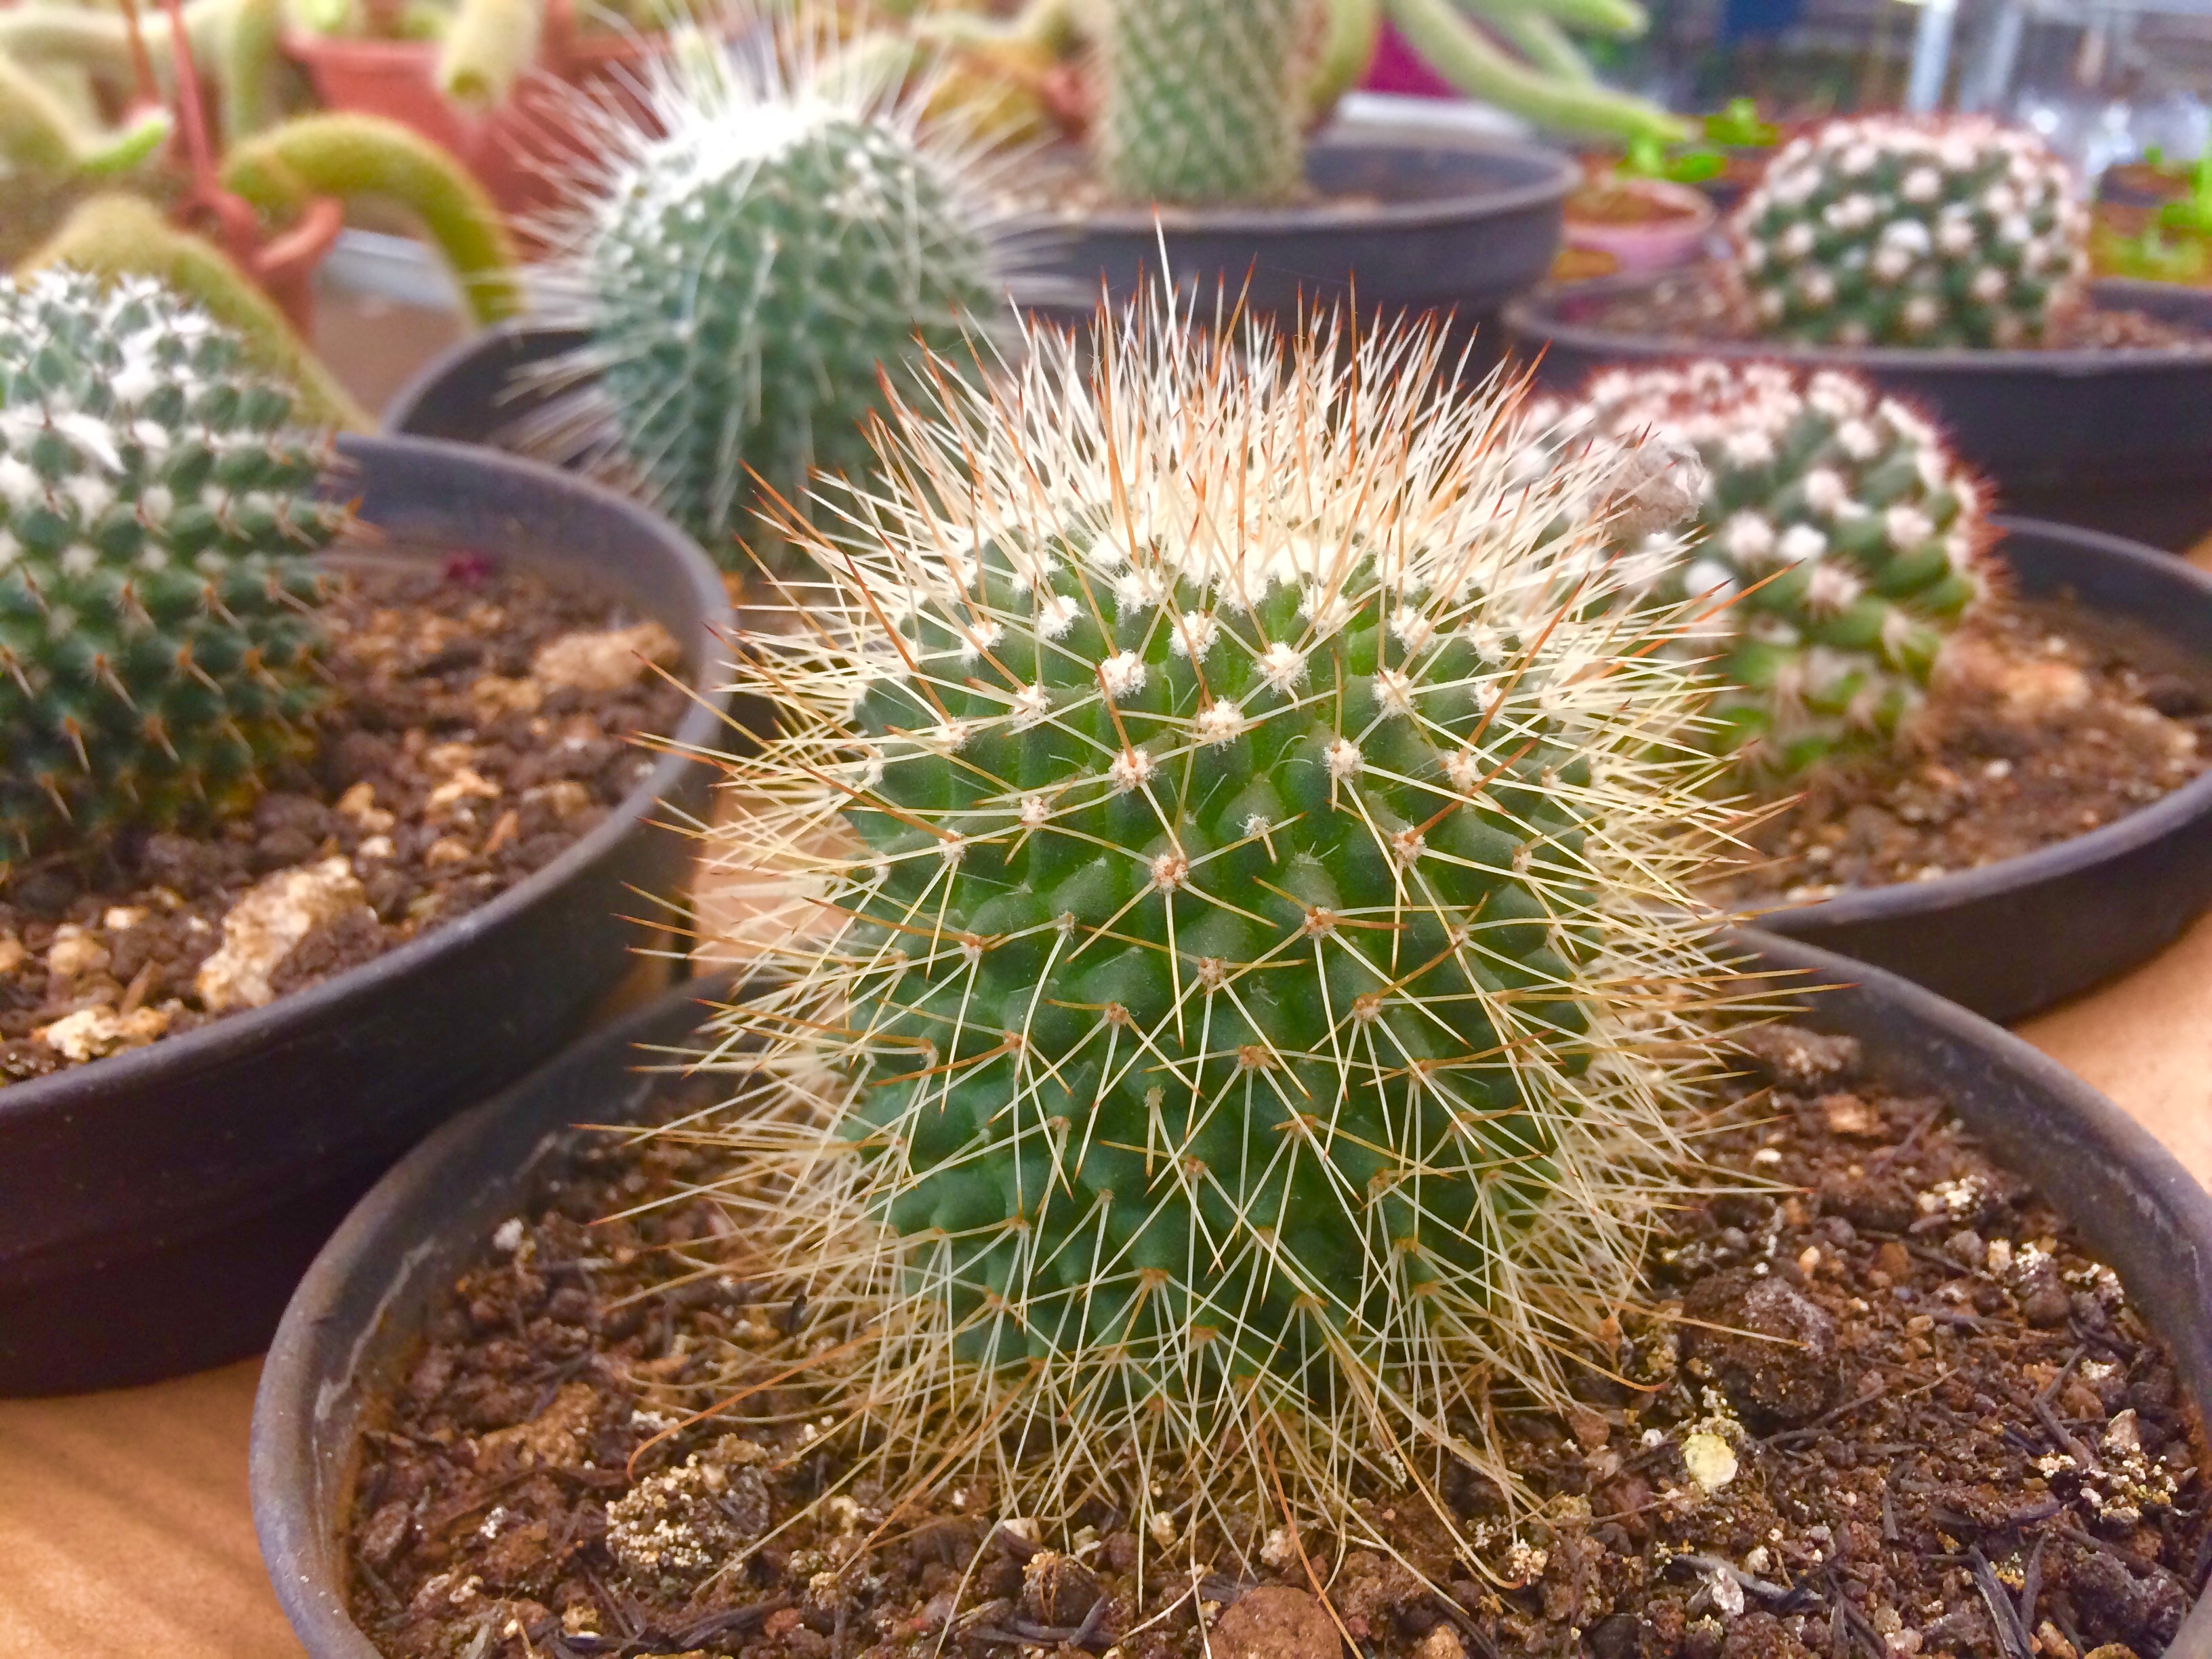 Típicos de regiões áridas, os cactus estão em ascensão nesta primavera